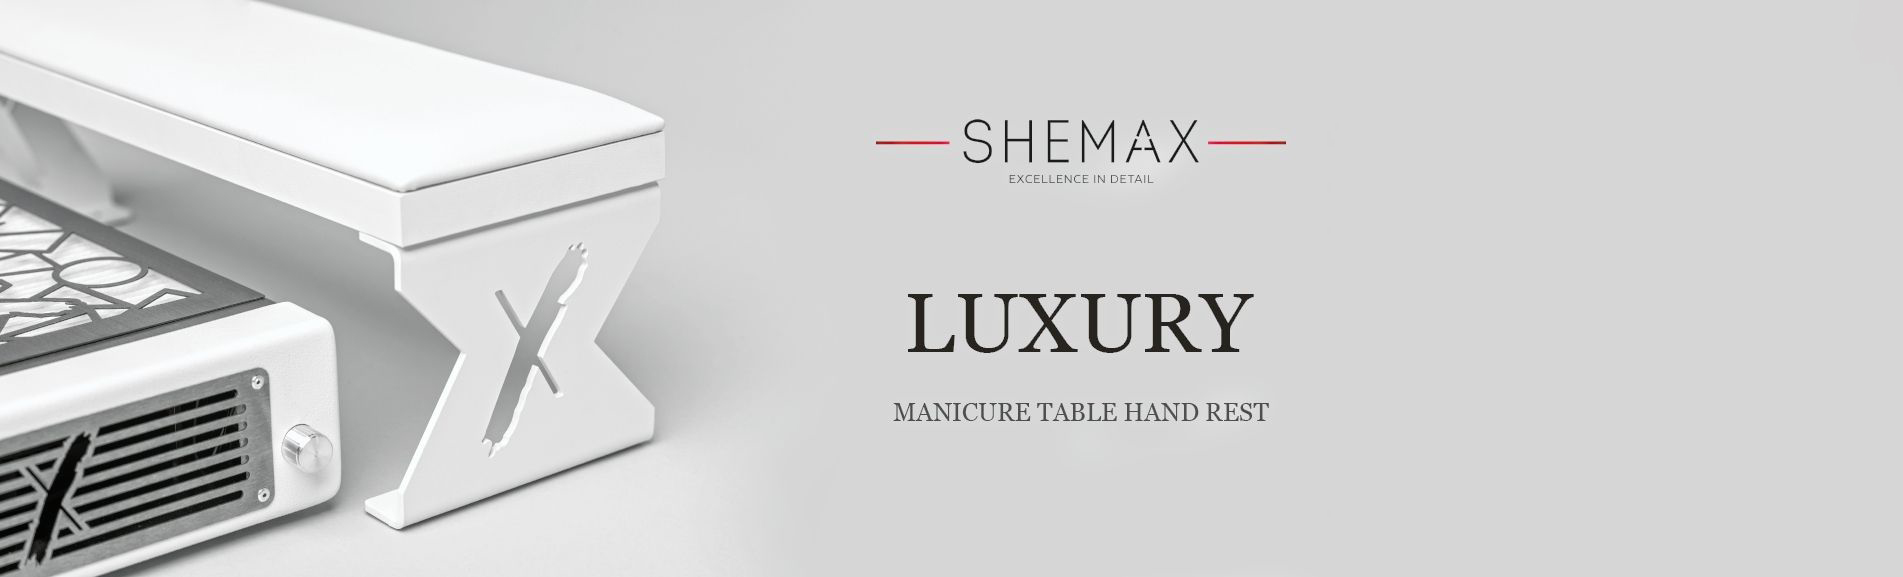 Shemax Luxury 2 